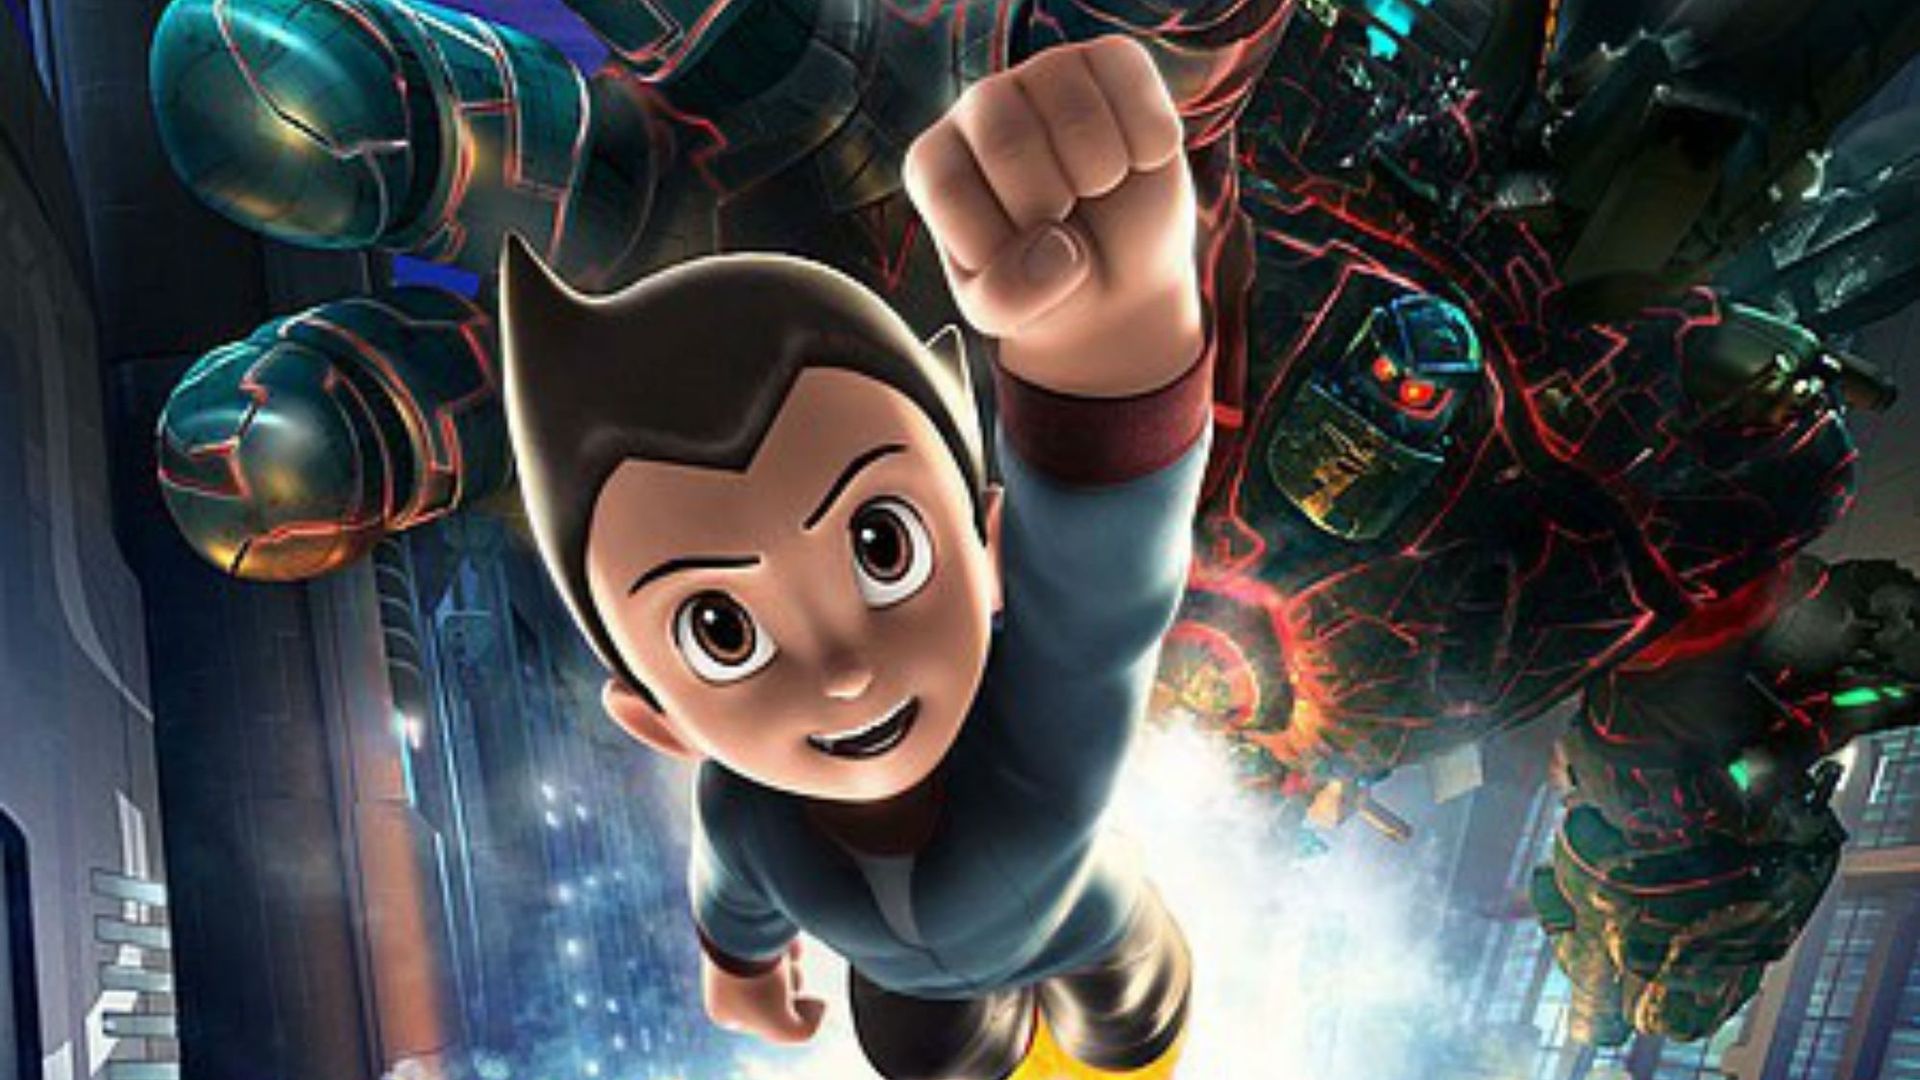 Astro Boy prendra forme humaine avec adaptation réelle avec des acteurs.